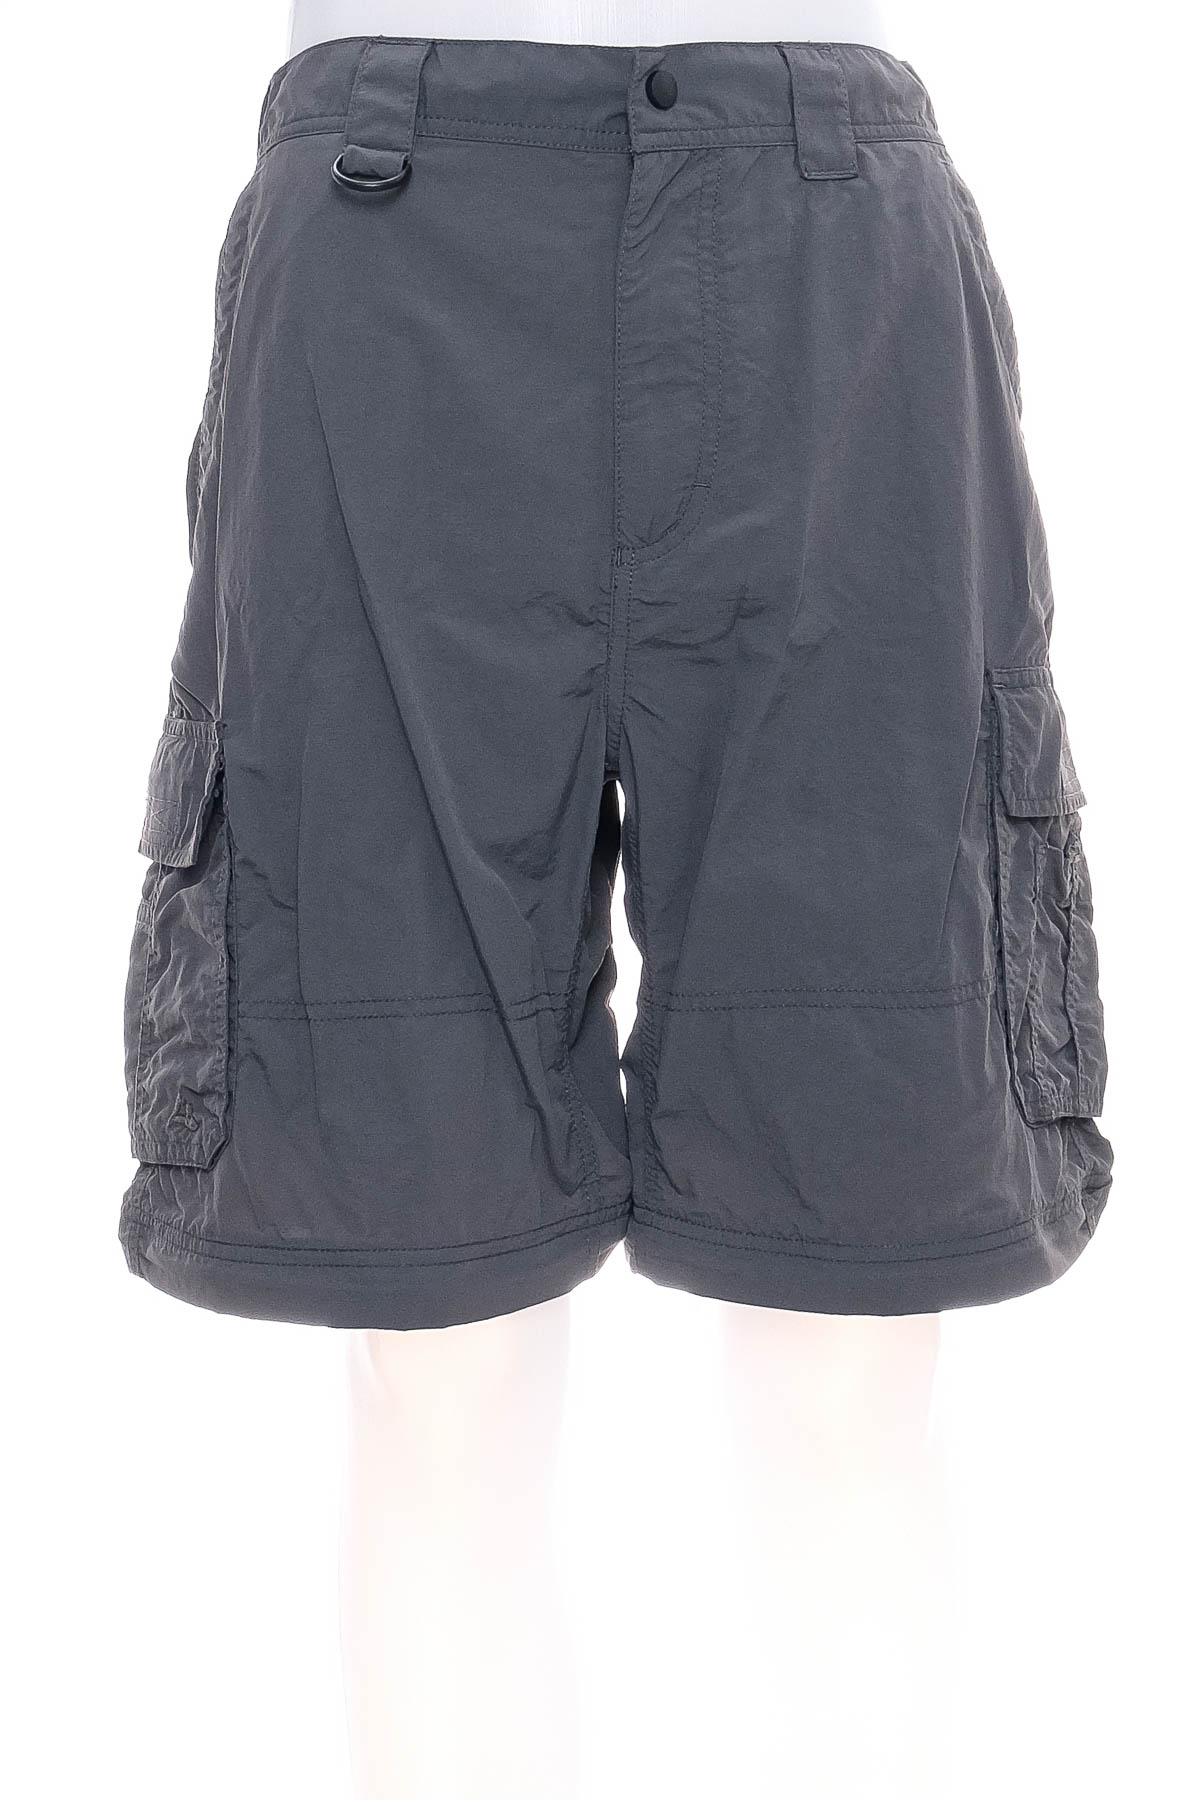 Pantaloni scurți bărbați - Alpine Design - 0